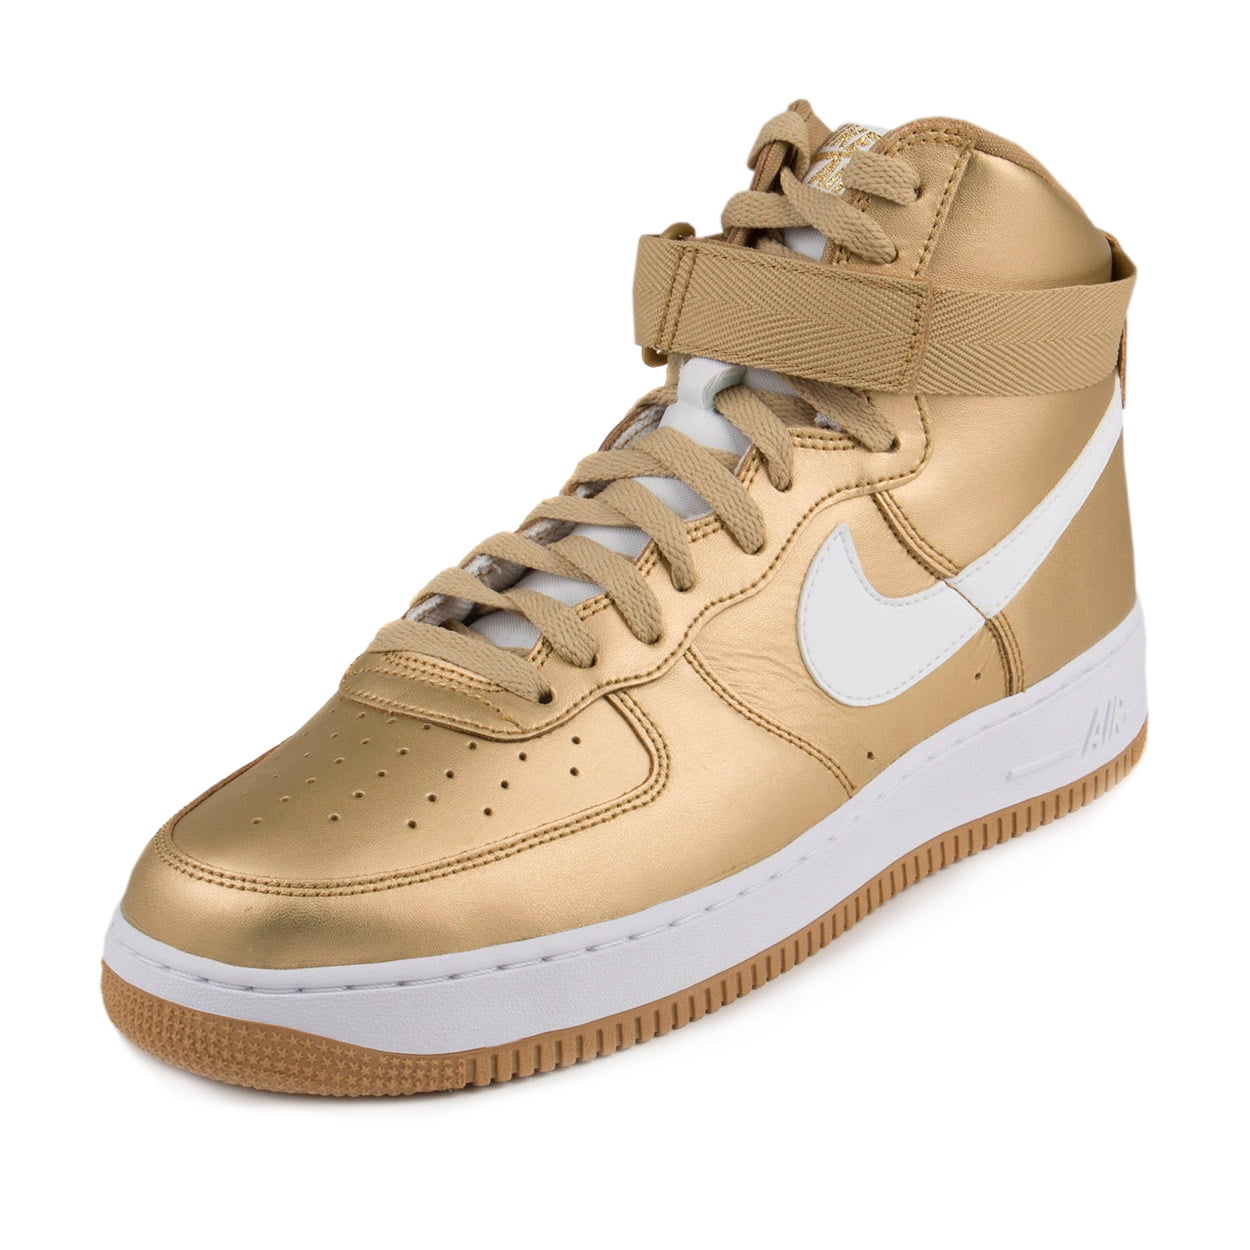 Nike Mens Air Force 1 High Retro QS Metallic Gold-White 823297-700 ...